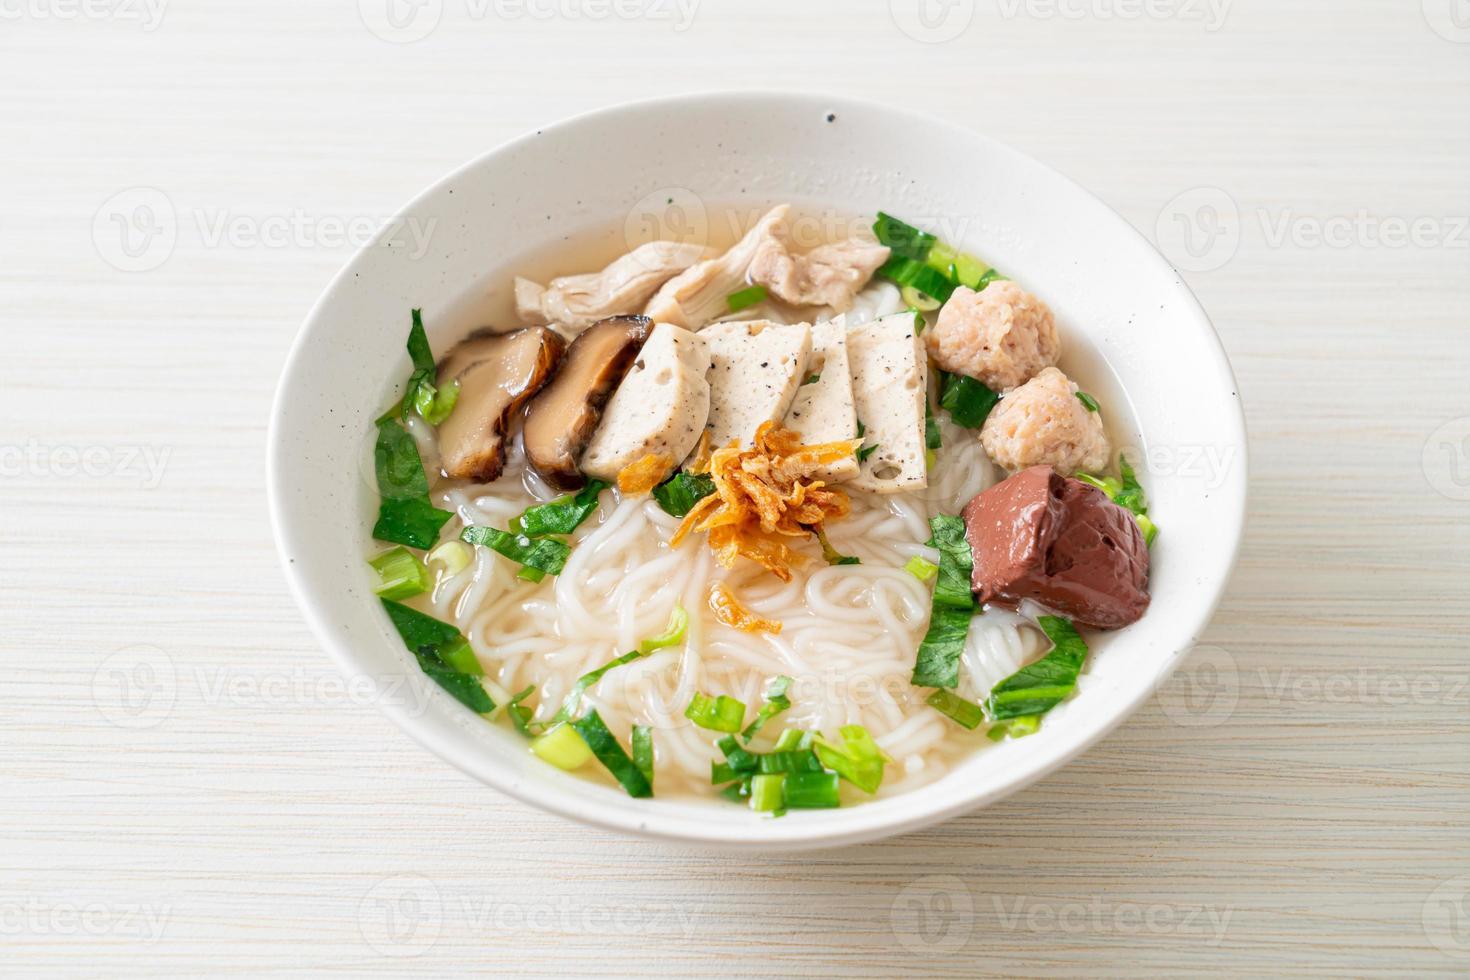 sopa de fideos de arroz vietnamita con salchicha vietnamita servida con verduras y cebolla crujiente foto